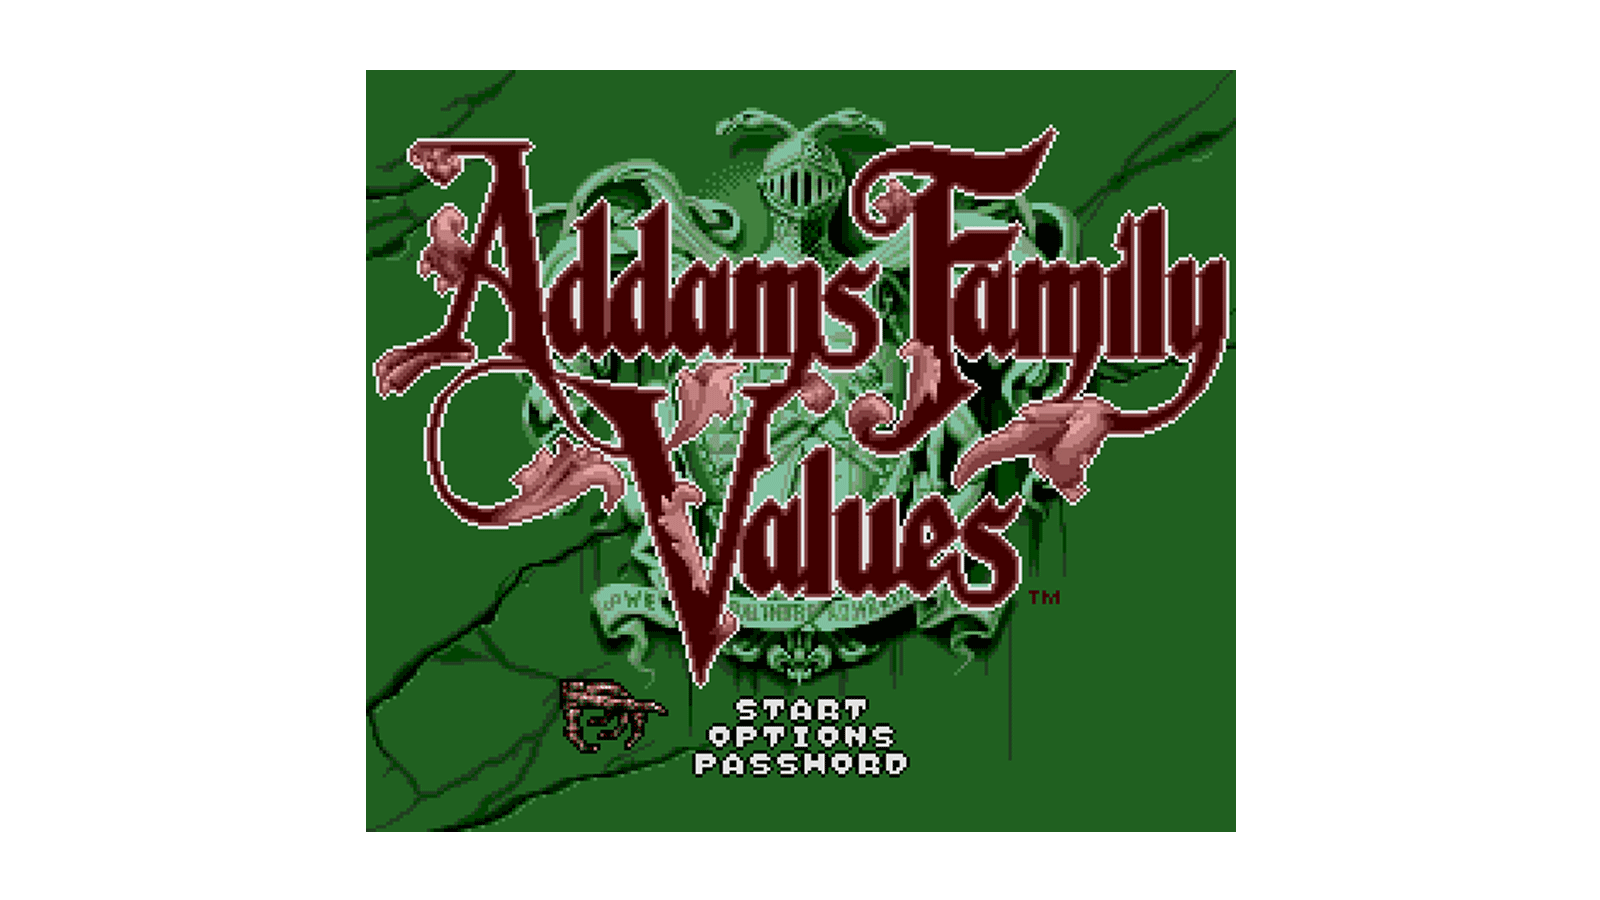 addams family values